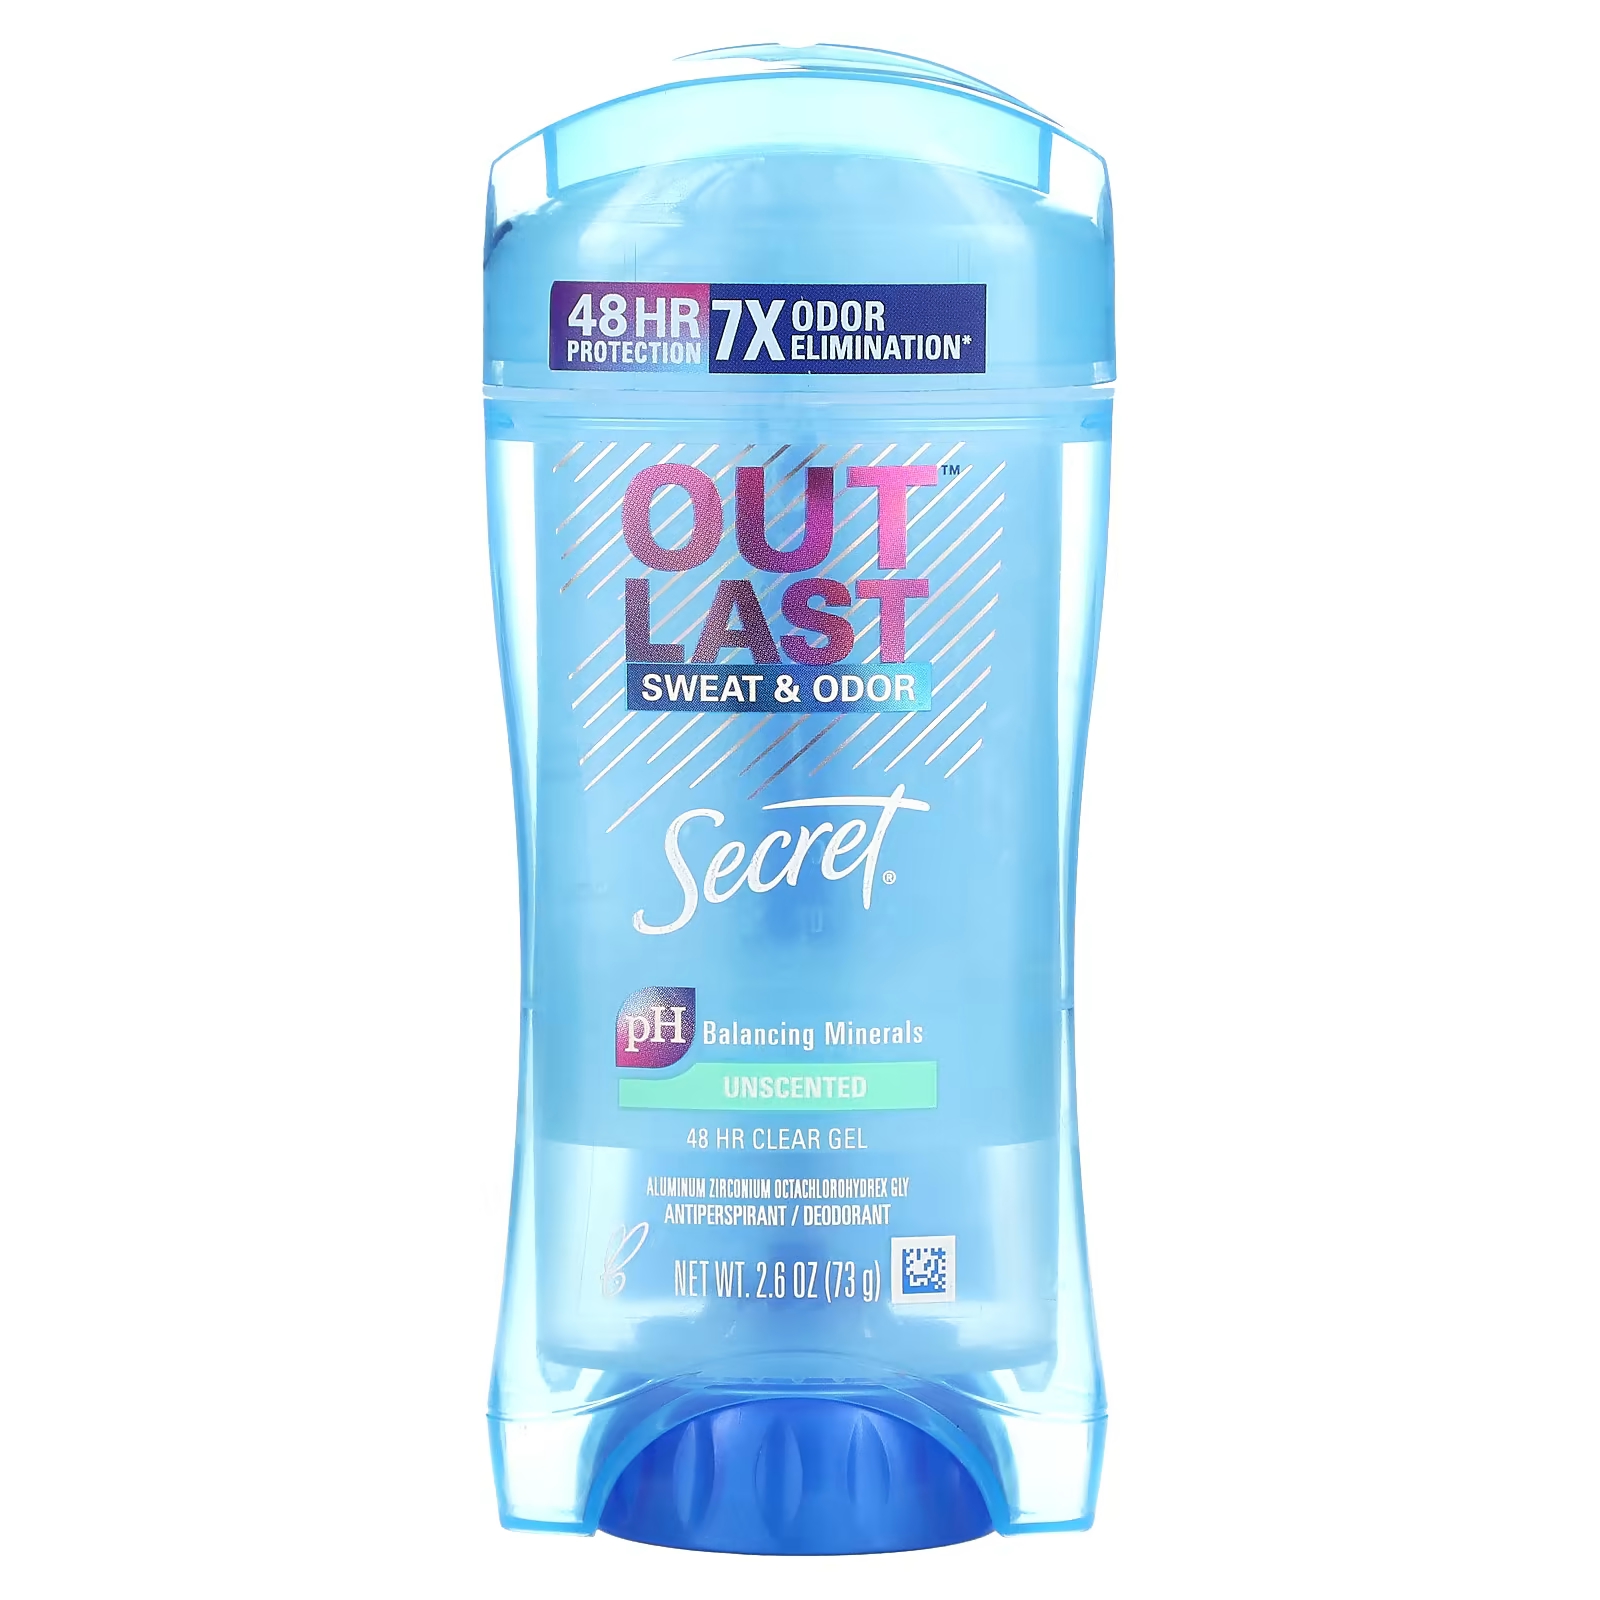 Дезодорант-антиперспирант Secret Outlast Sweat & Odor secret outlast 48 часовой прозрачный гель дезодорант полностью чистый 2 6 унции 73 г